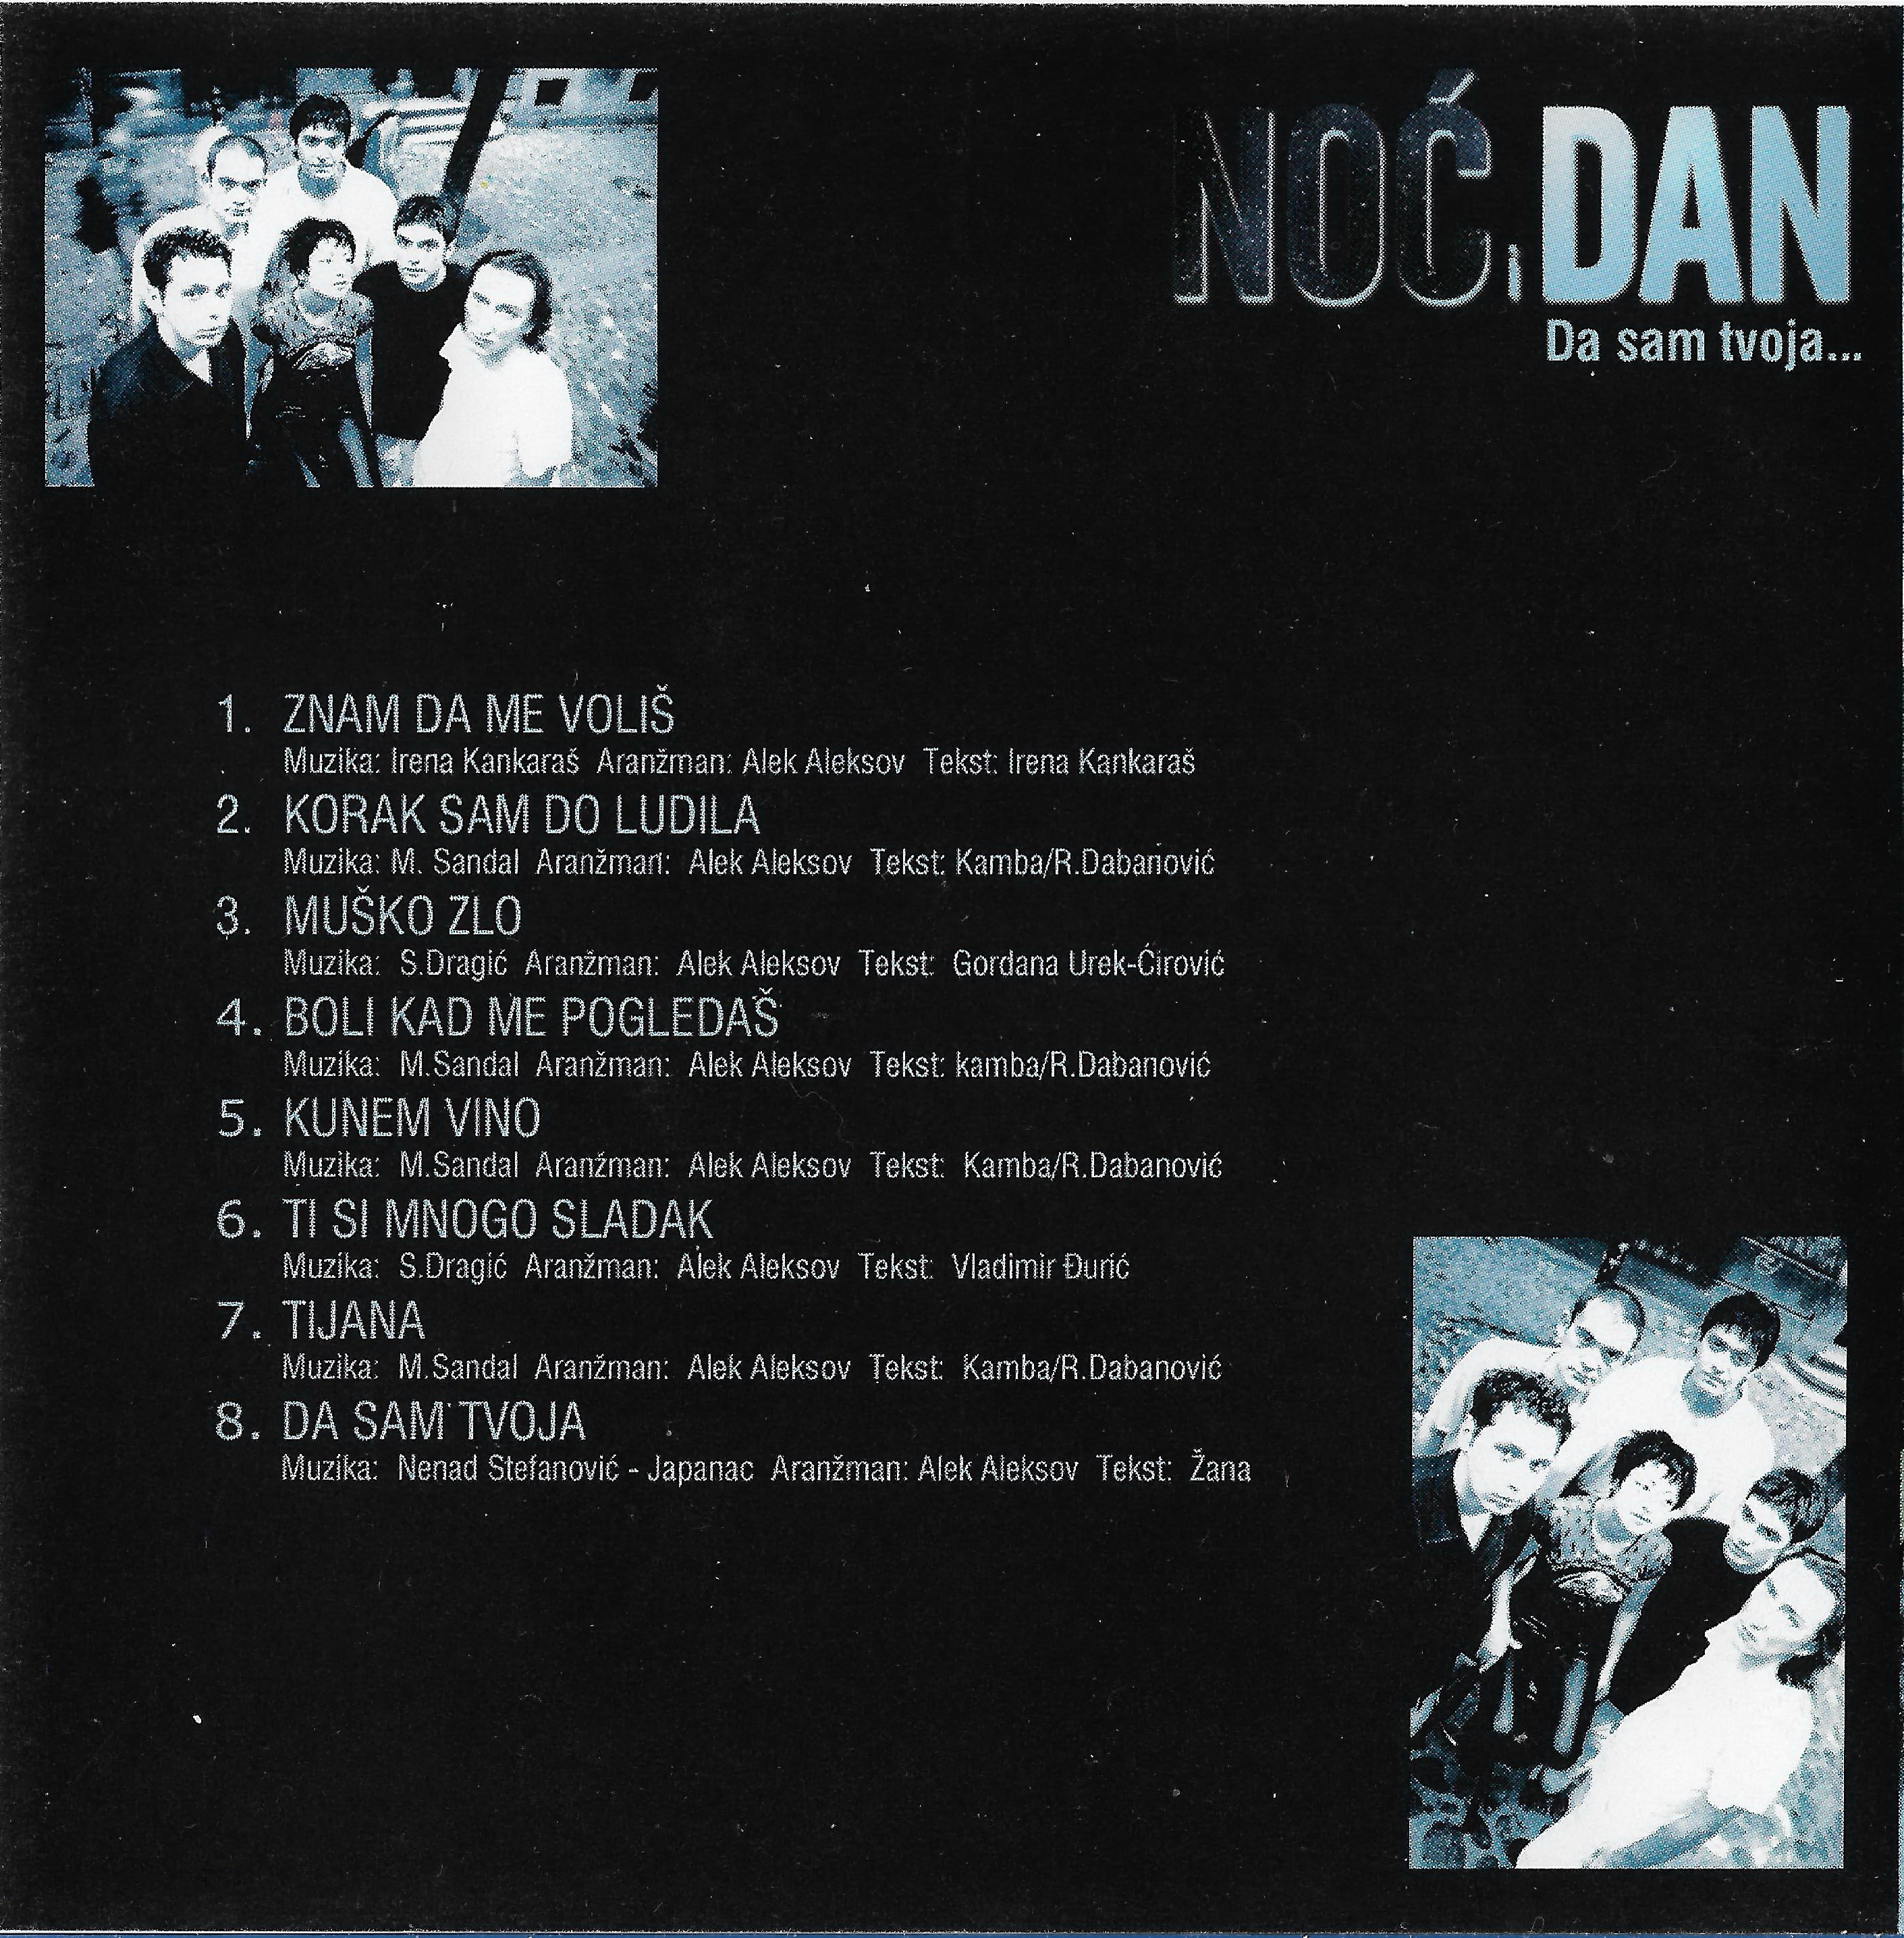 No IDan 2000 CD 1 b